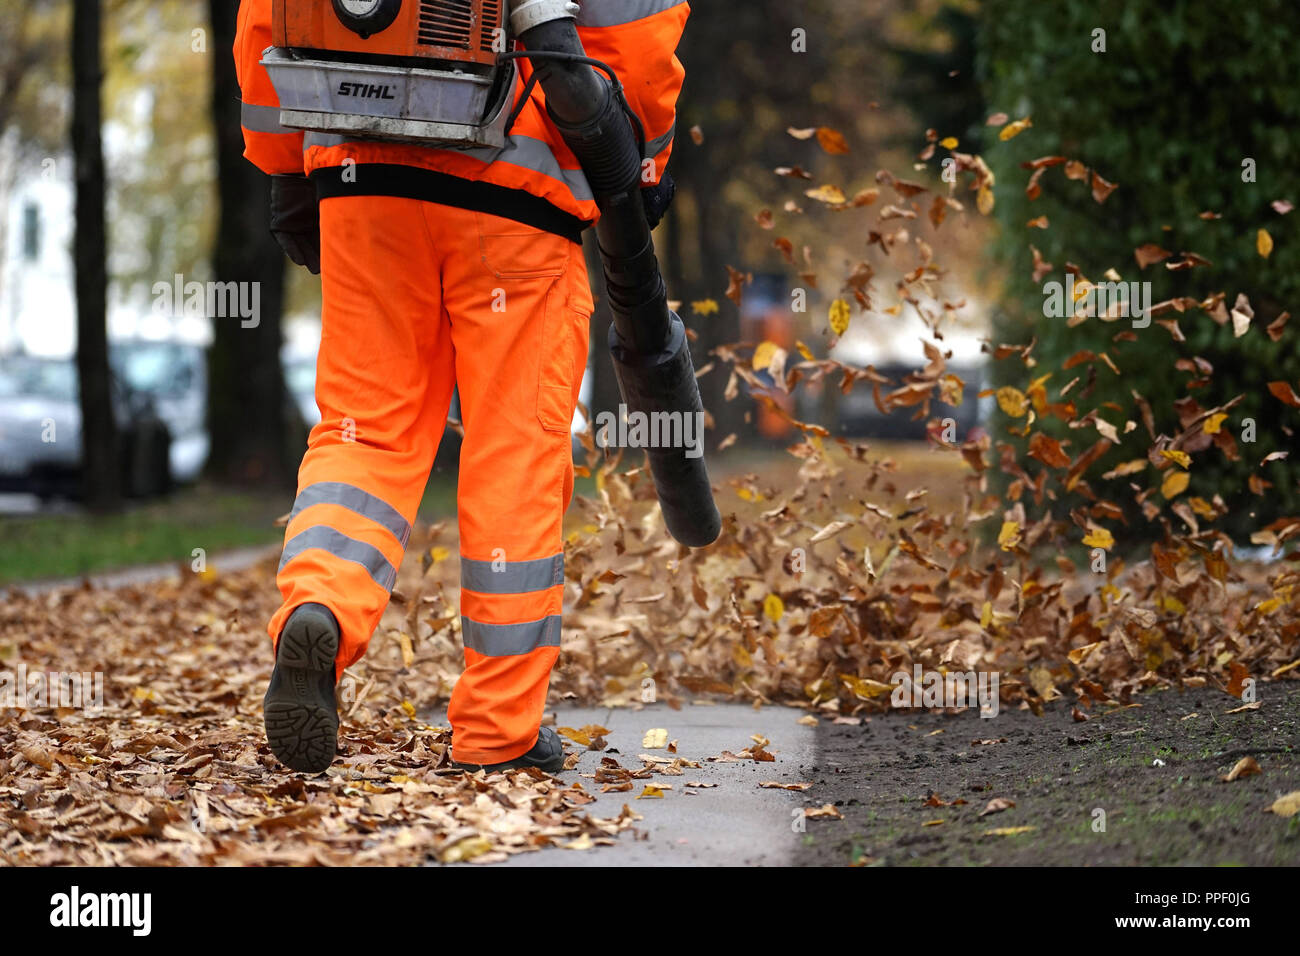 Ein Arbeiter in einem orange Overall bläst gefallen Blätter von einer öffentlichen Straße in München. Stockfoto